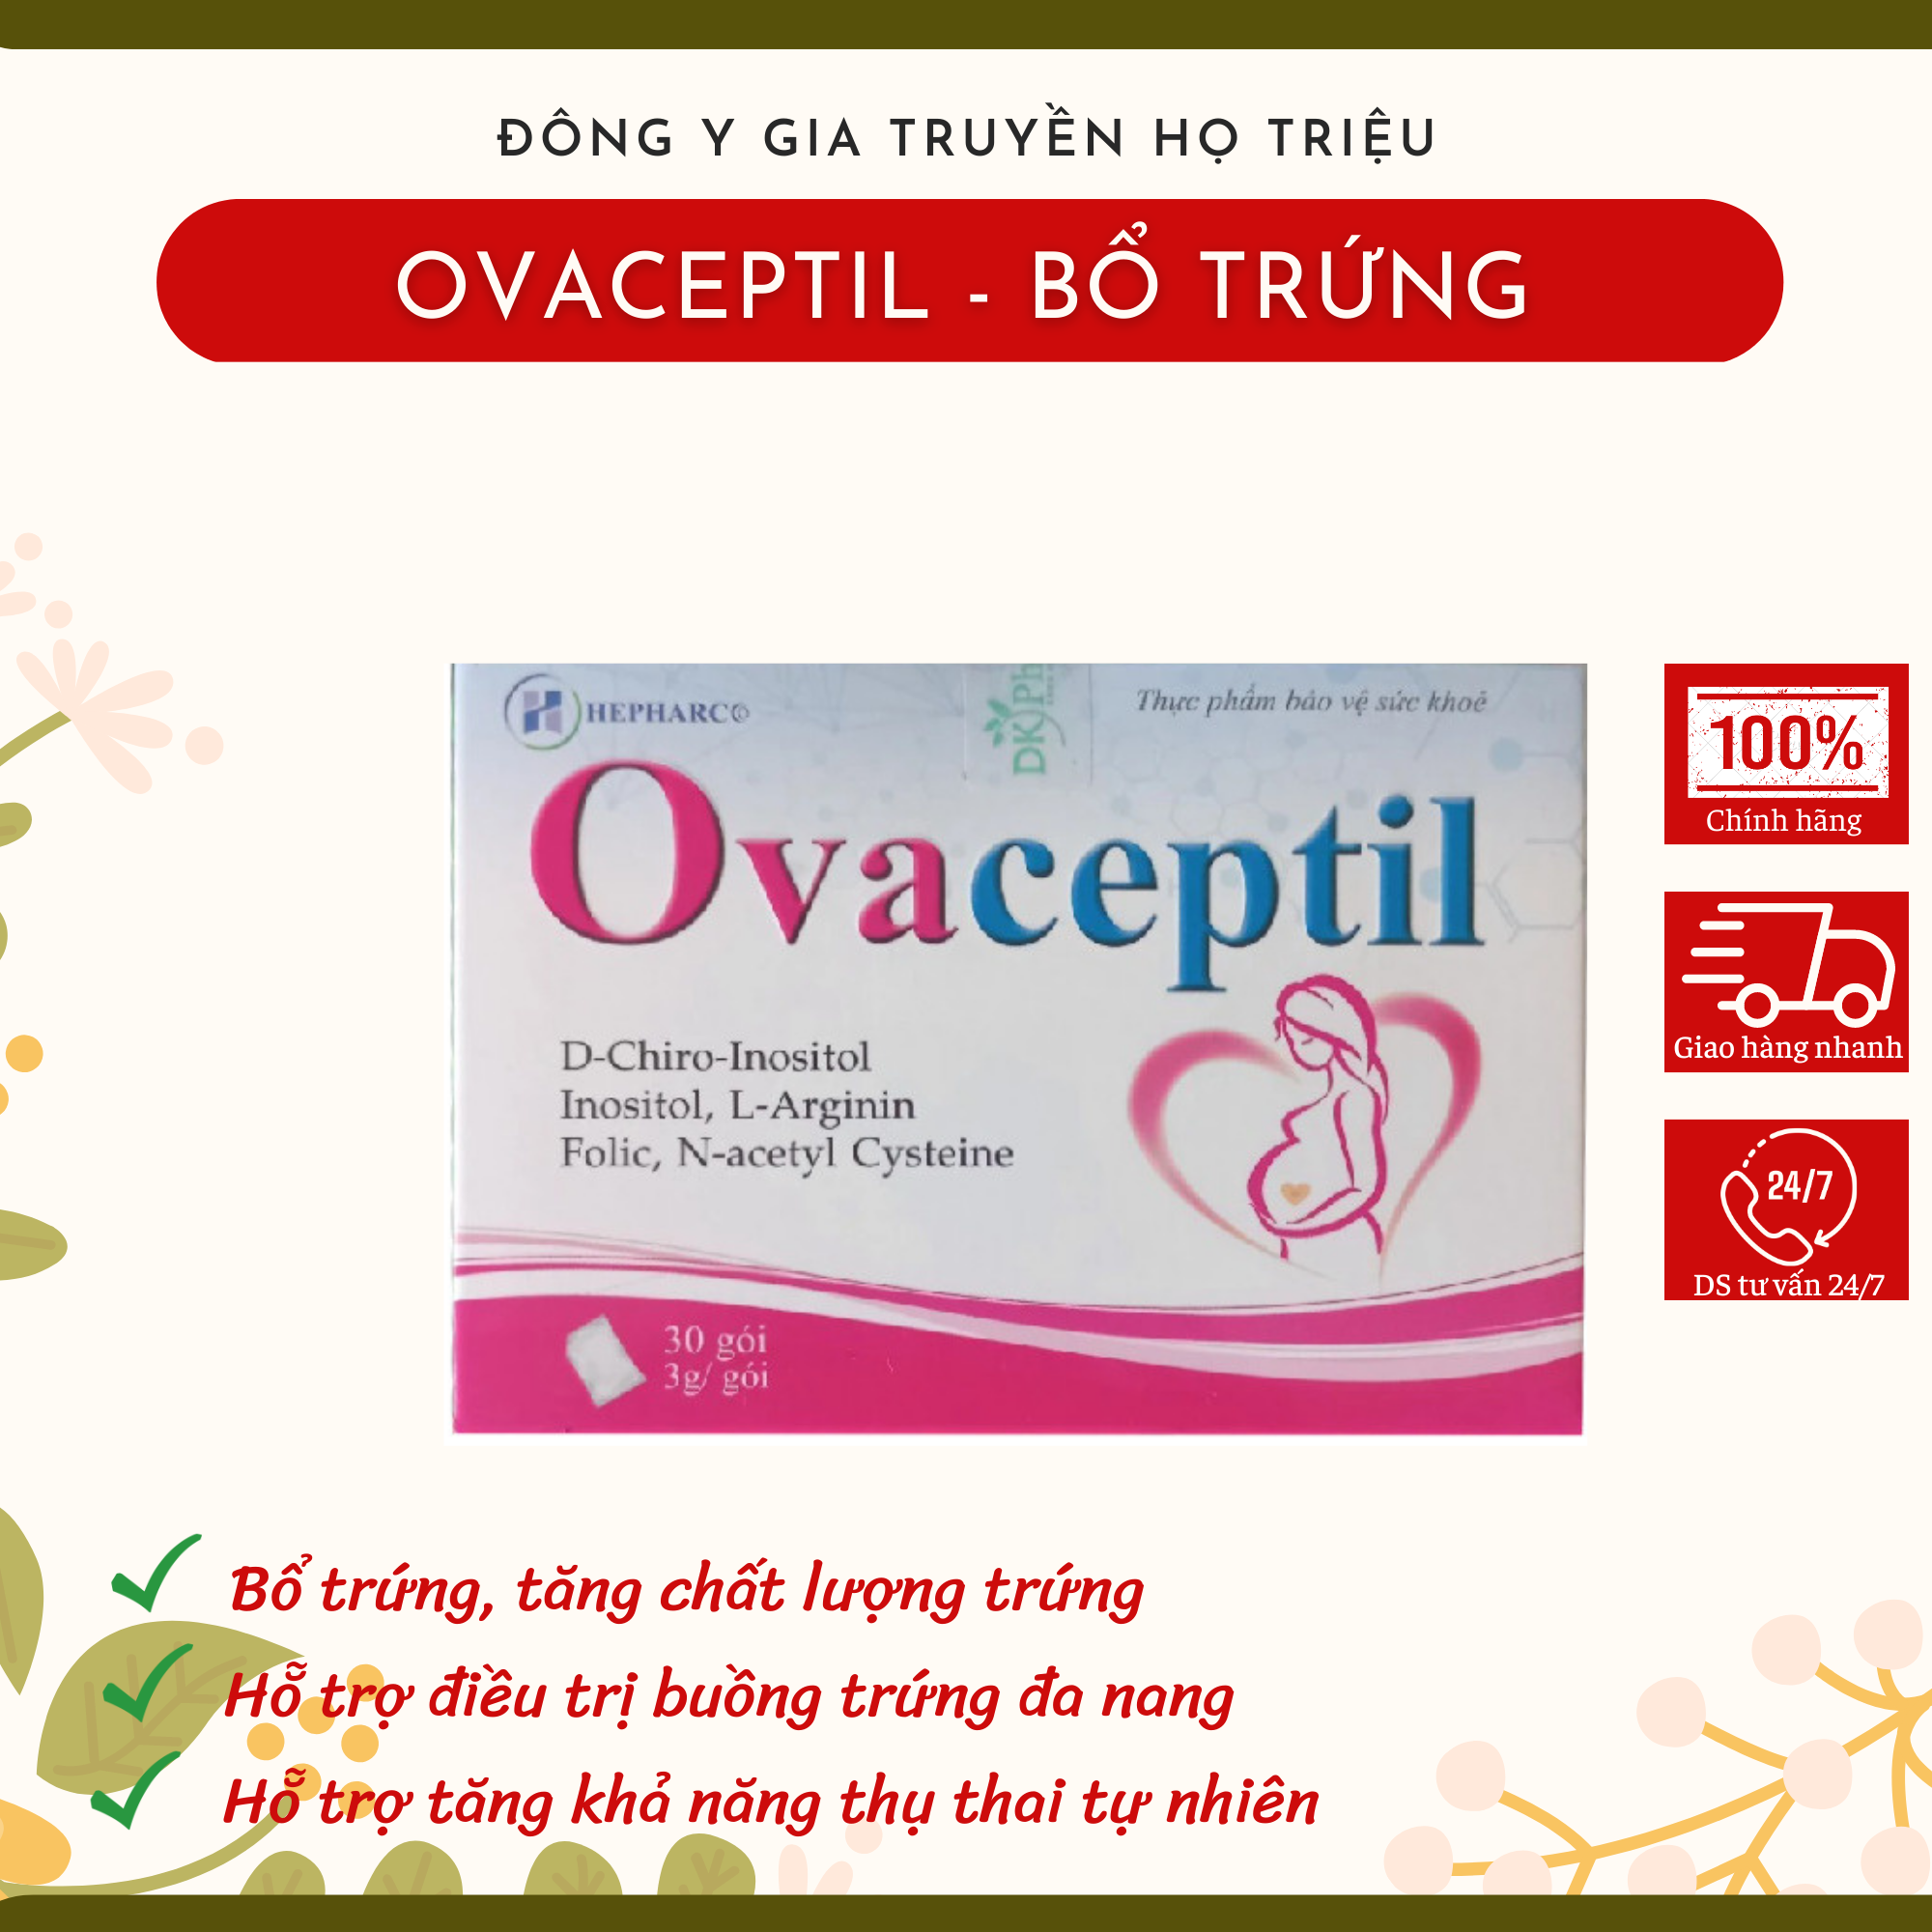 Ovaceptil, bổ trứng, hỗ trợ cải thiện buồng trứng đa nang, hỗ trợ sinh sản